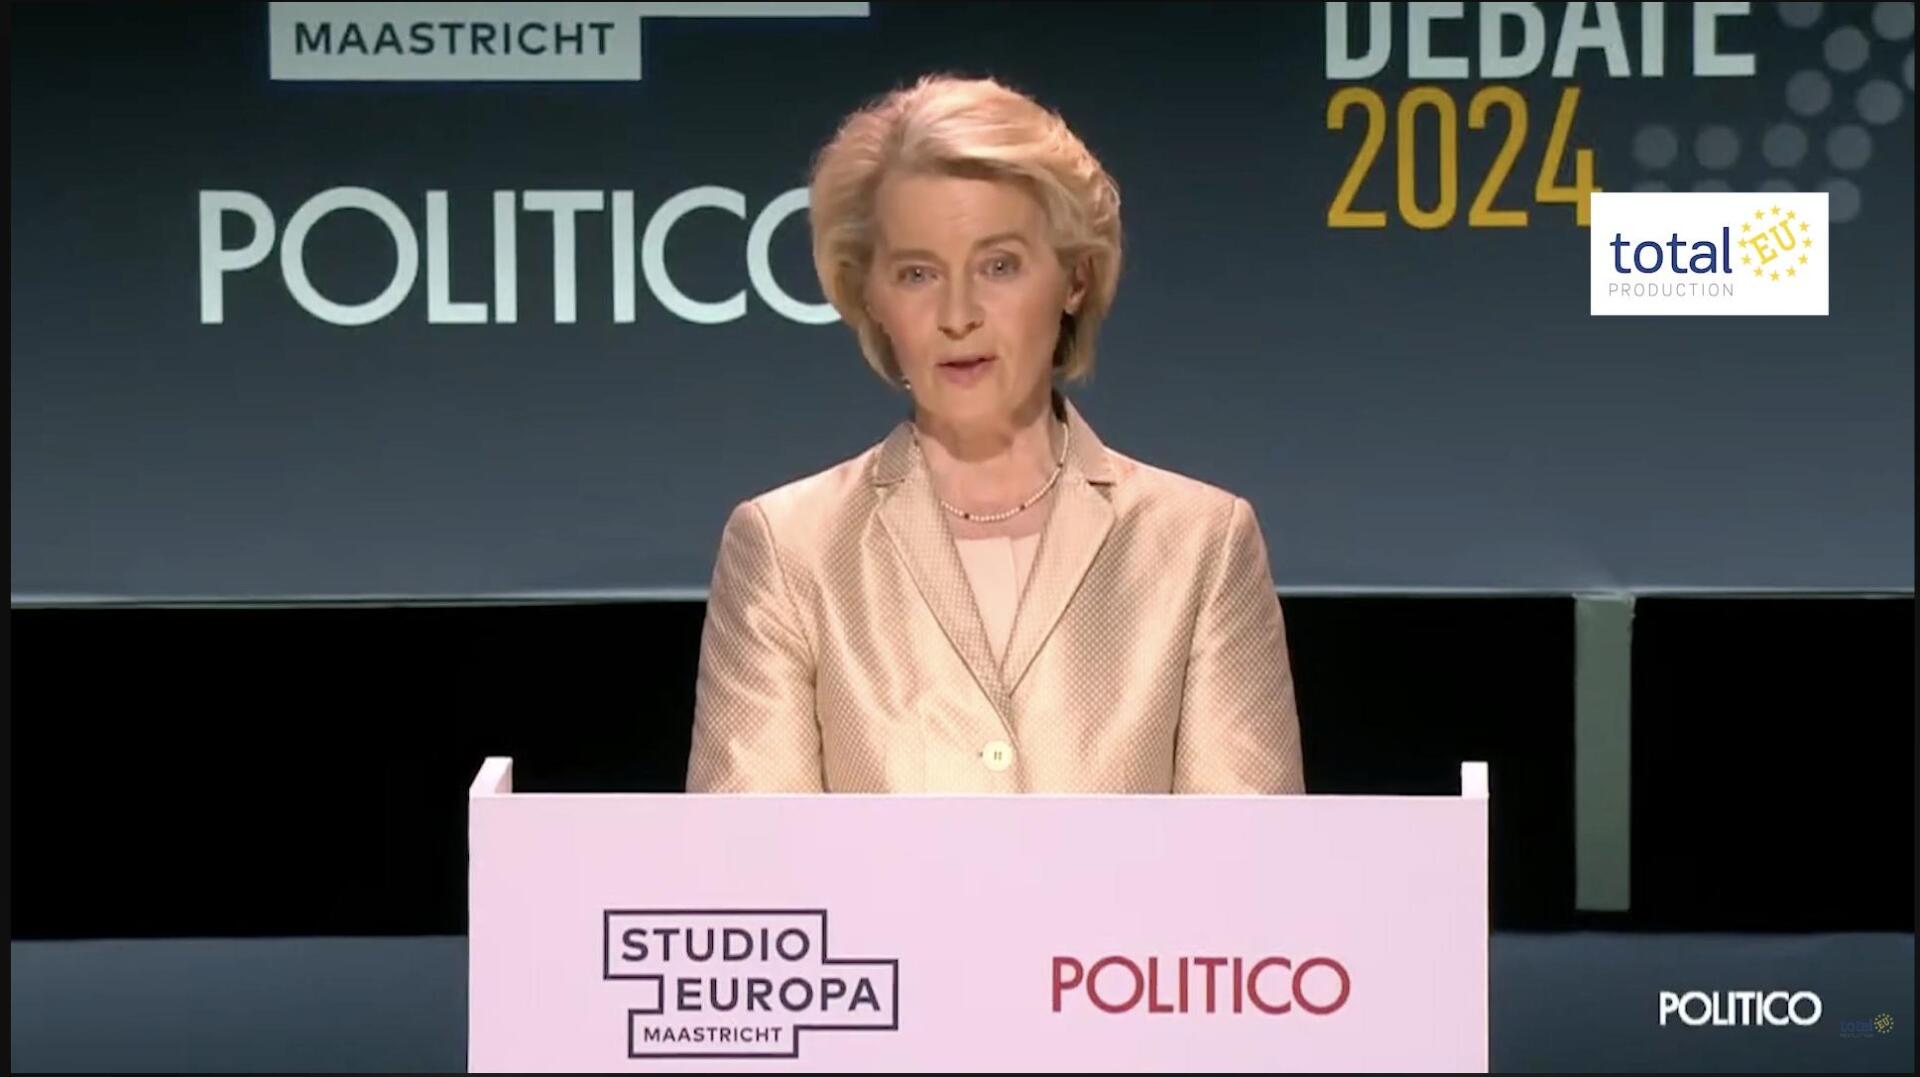 Maastricht debate: Ursula von der Leyen (EPP)